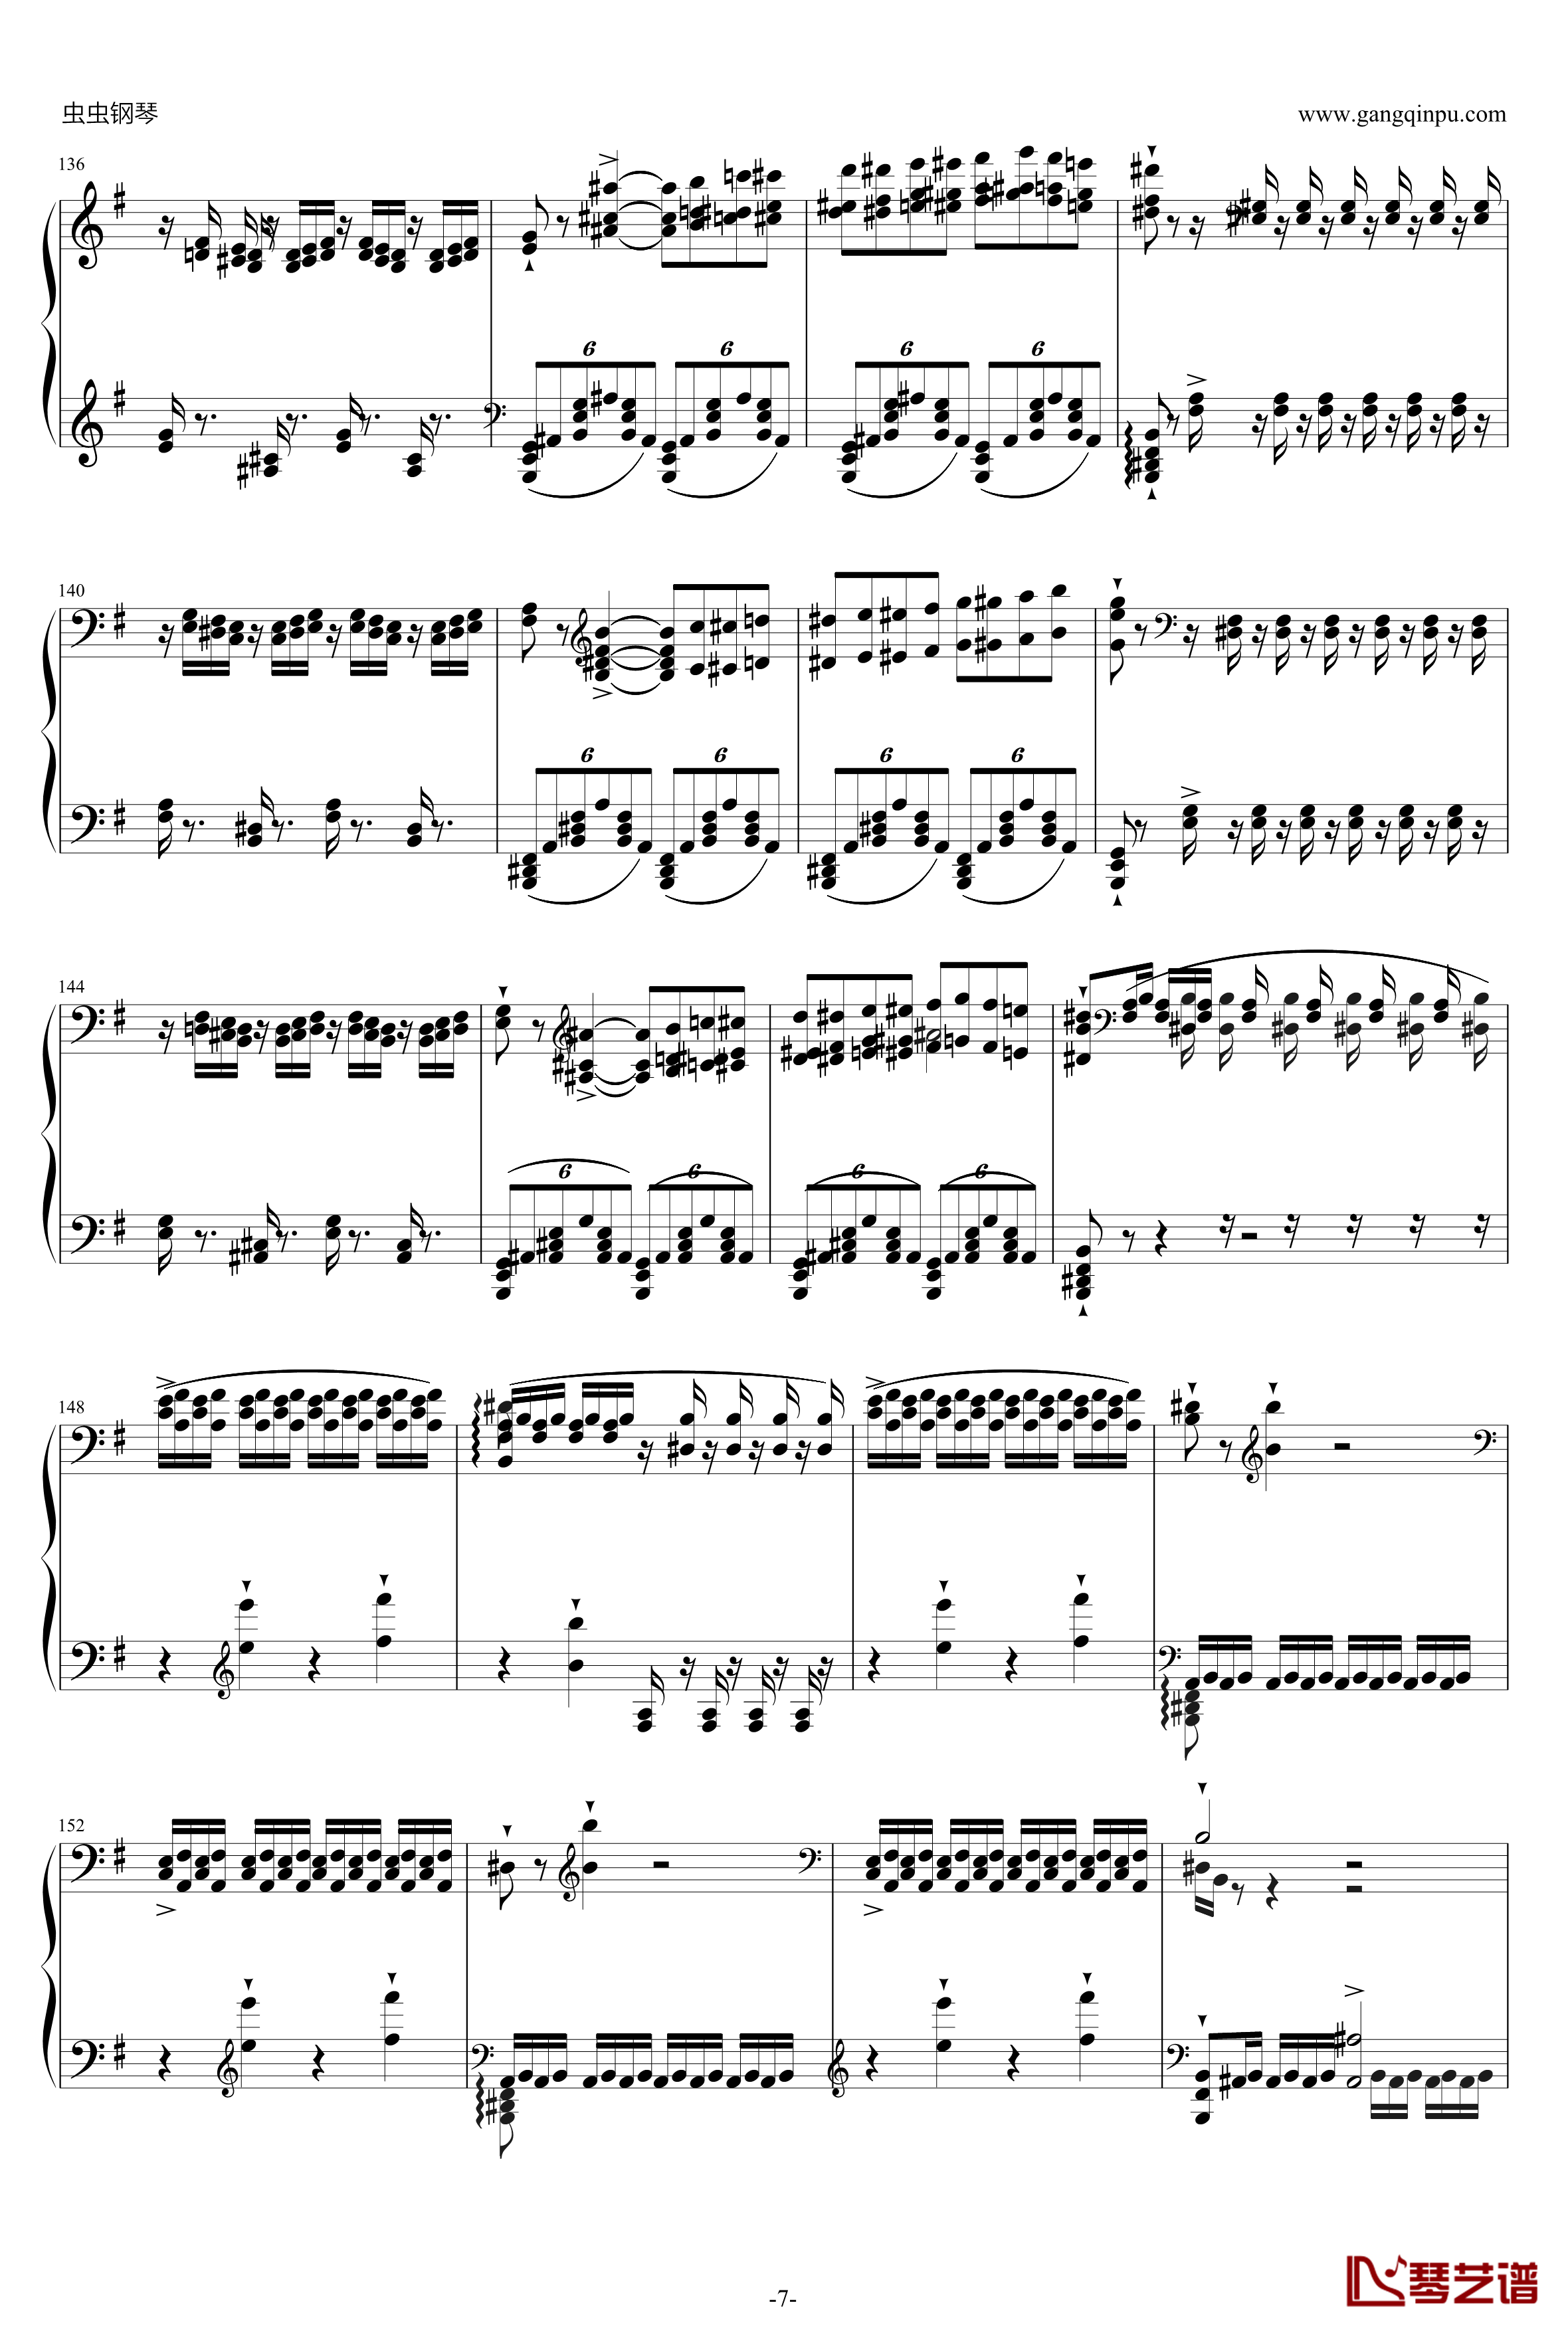 威廉·退尔序曲钢琴谱-李斯特S.5527